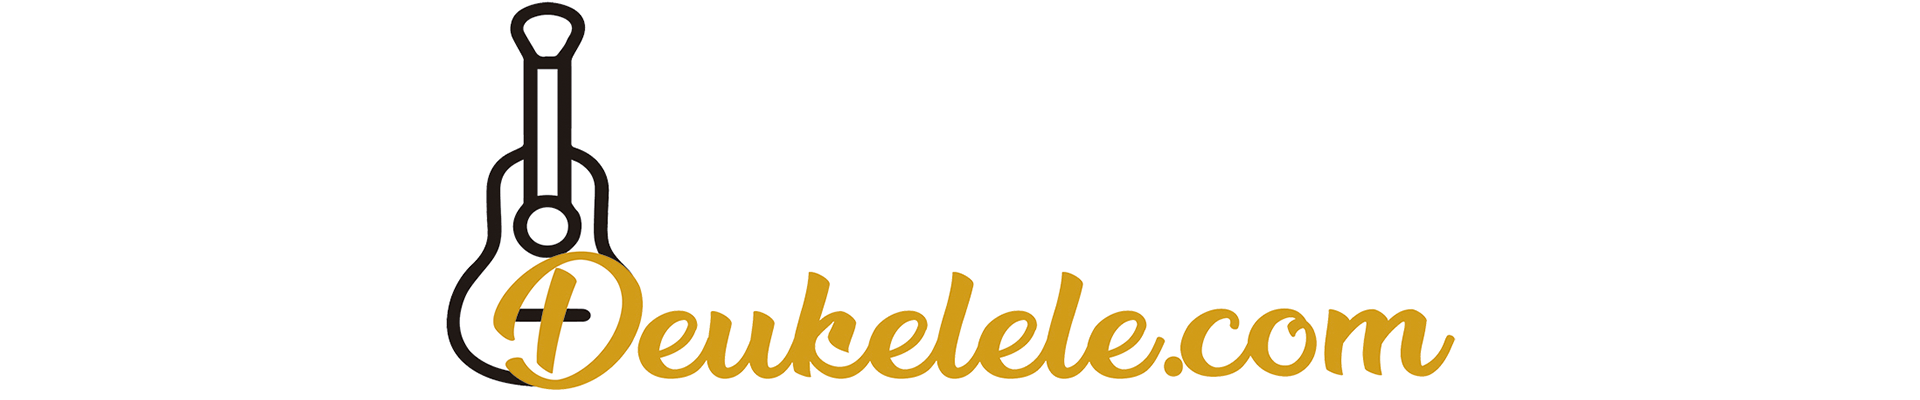 69 Canciones Faciles Para Principiantes De Ukelele Con Cuatro Acordes Letra, patron de rasgueo y acordes. para principiantes de ukelele